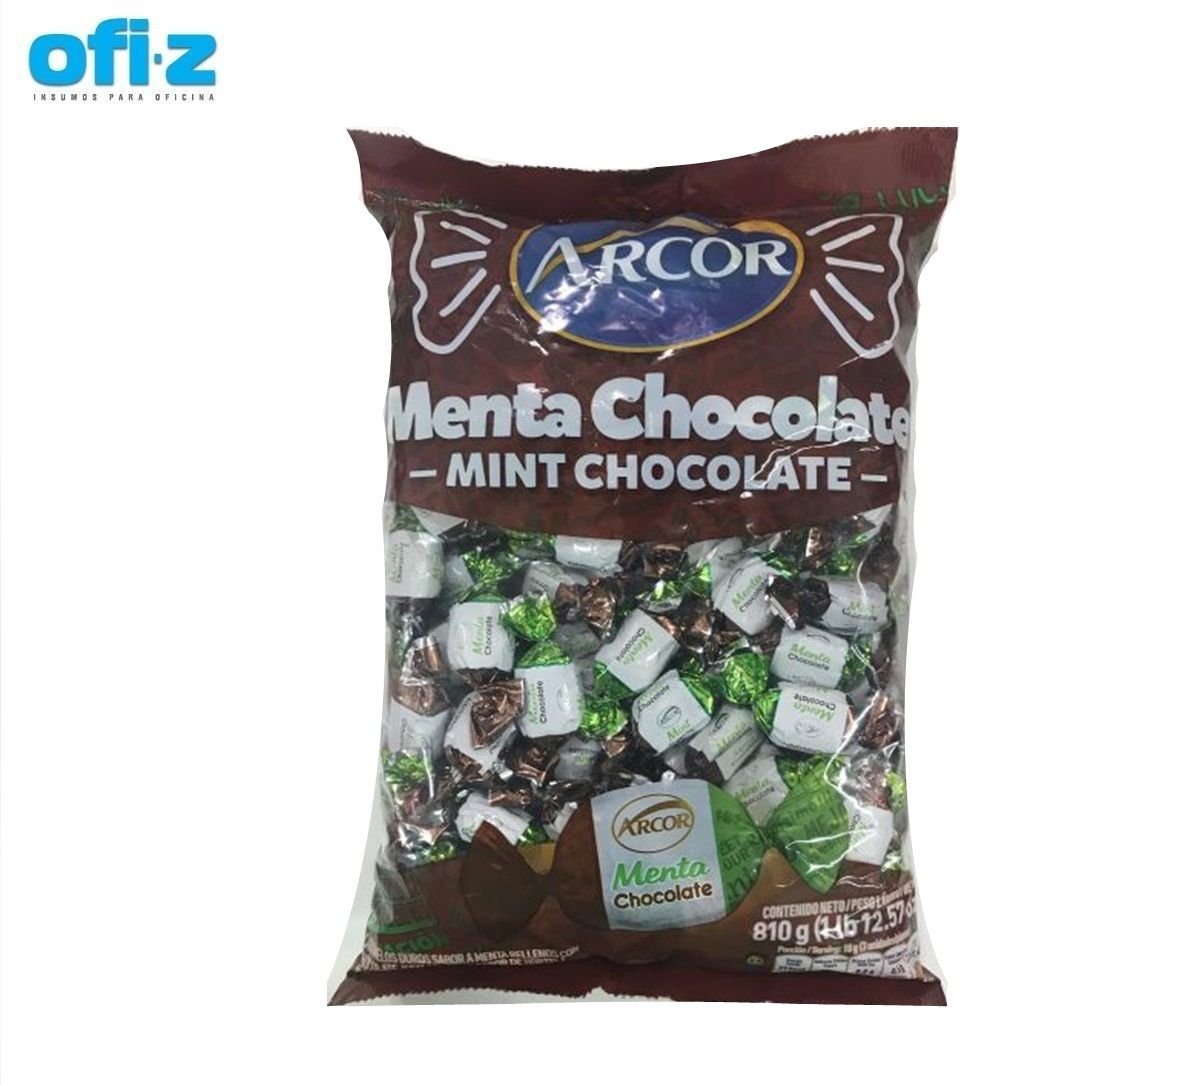 Caramelo Arcor menta chocolate 810G